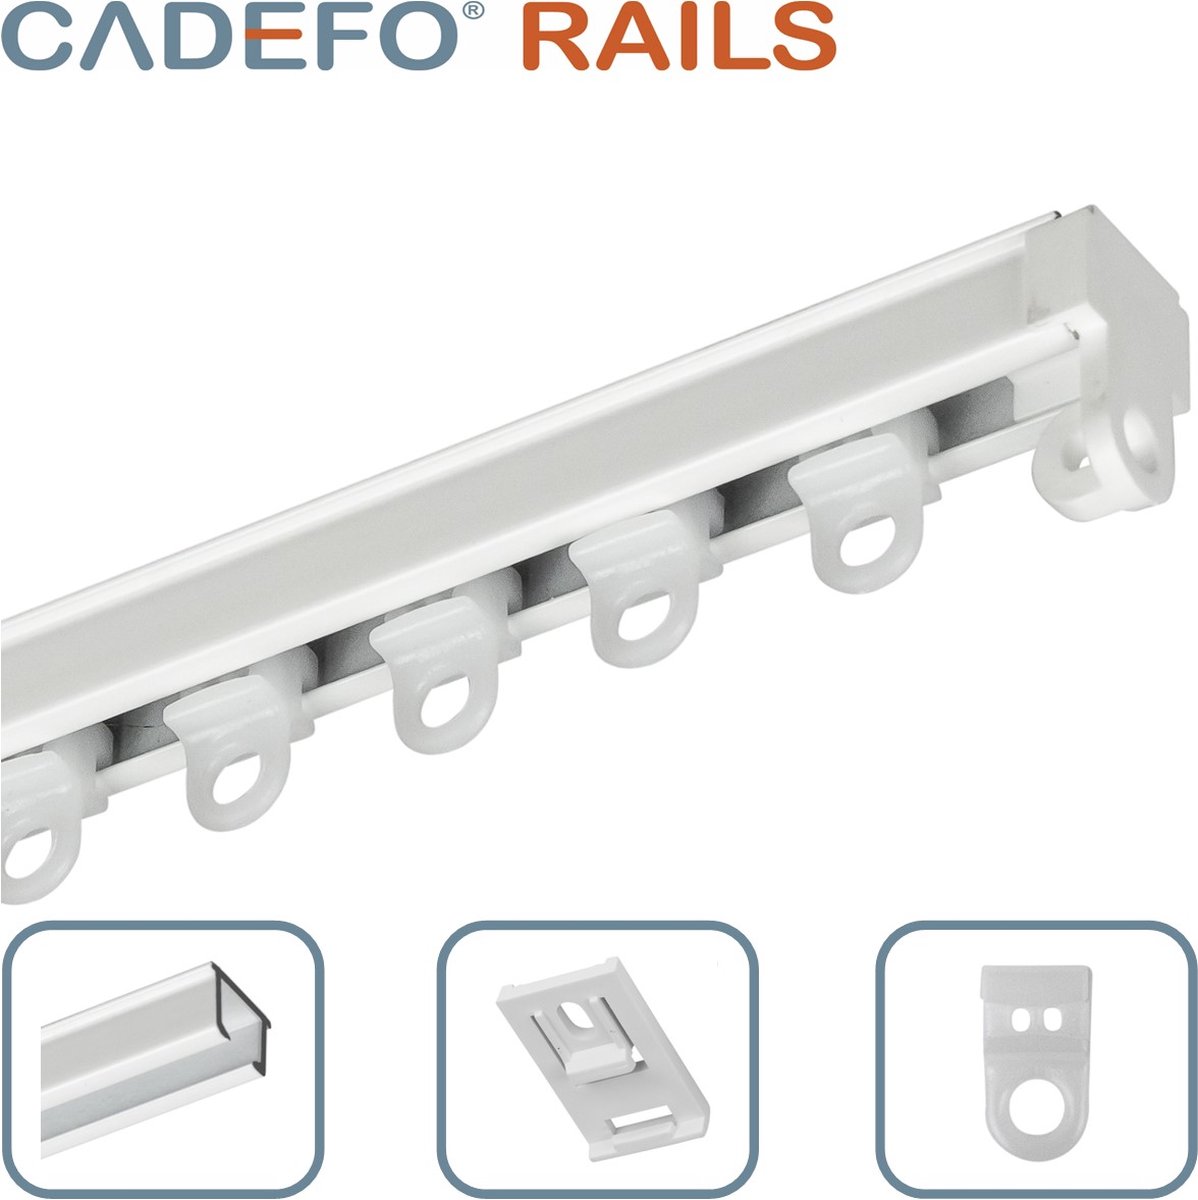 CADEFO RAILS (401 - 450 cm) Gordijnrails - Compleet op maat! - UIT 1 STUK - Leverbaar tot 6 meter - Plafondbevestiging - Lengte 450 cm - 4,5 meter